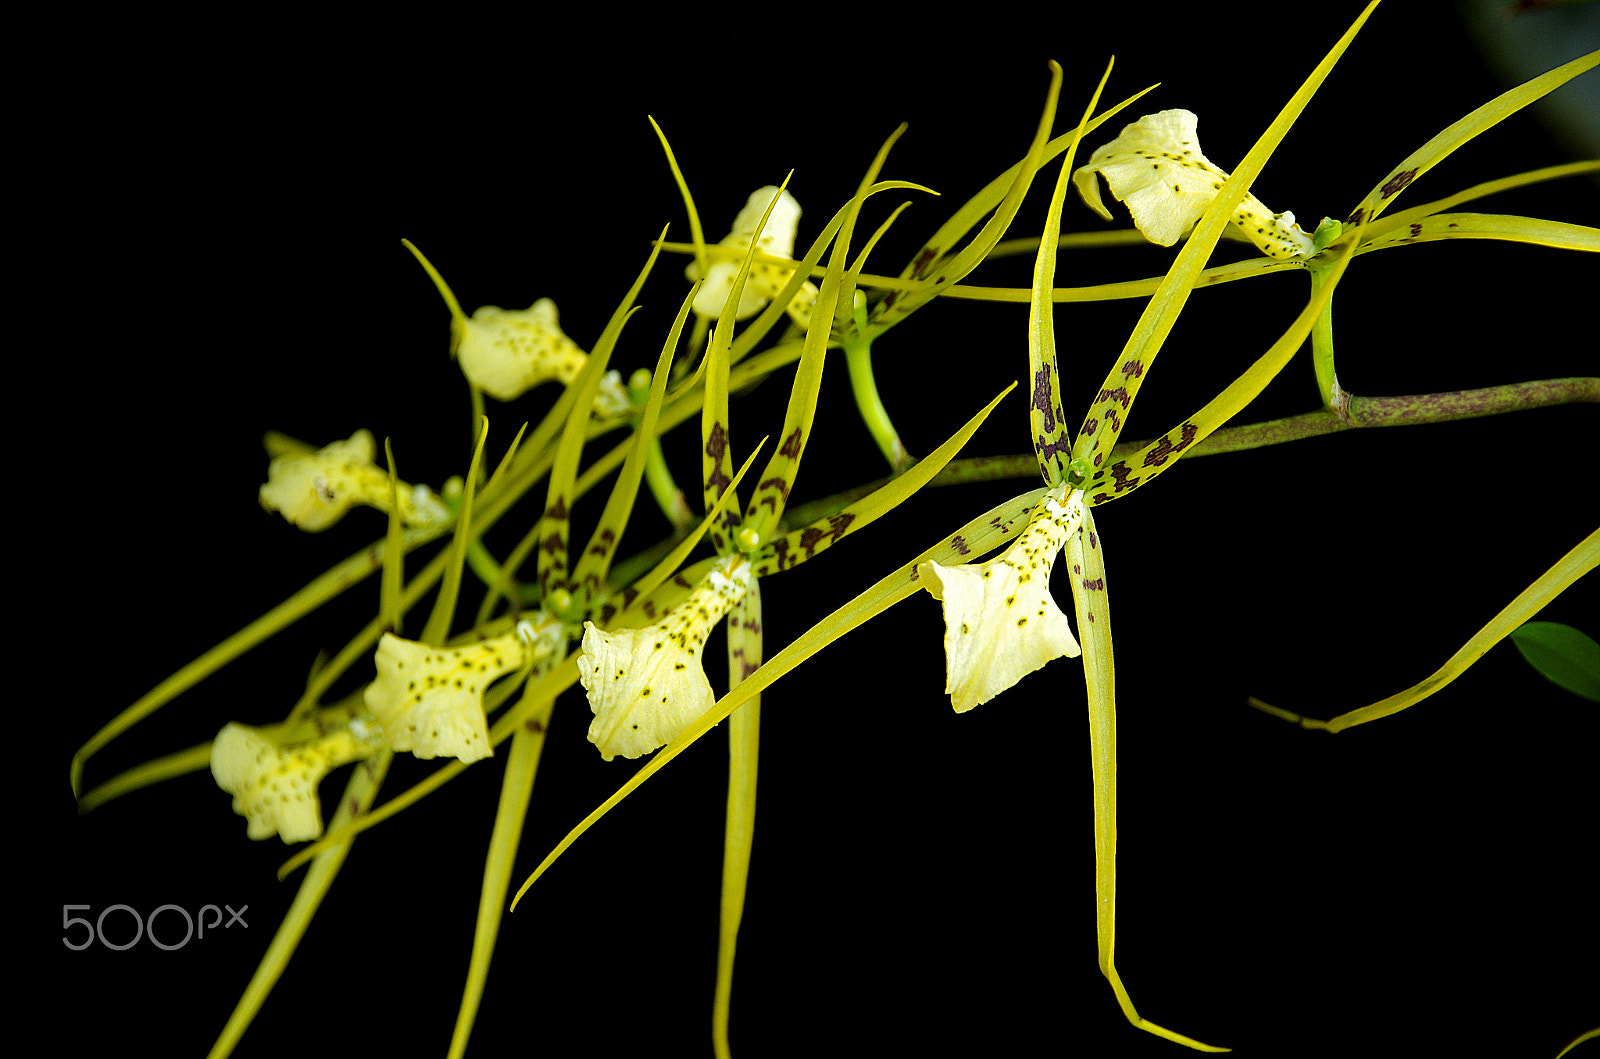 Sigma 17-50mm F2.8 EX DC HSM sample photo. Brassia - spider orchid - lan nhện - vũ nữ nhện xanh photography